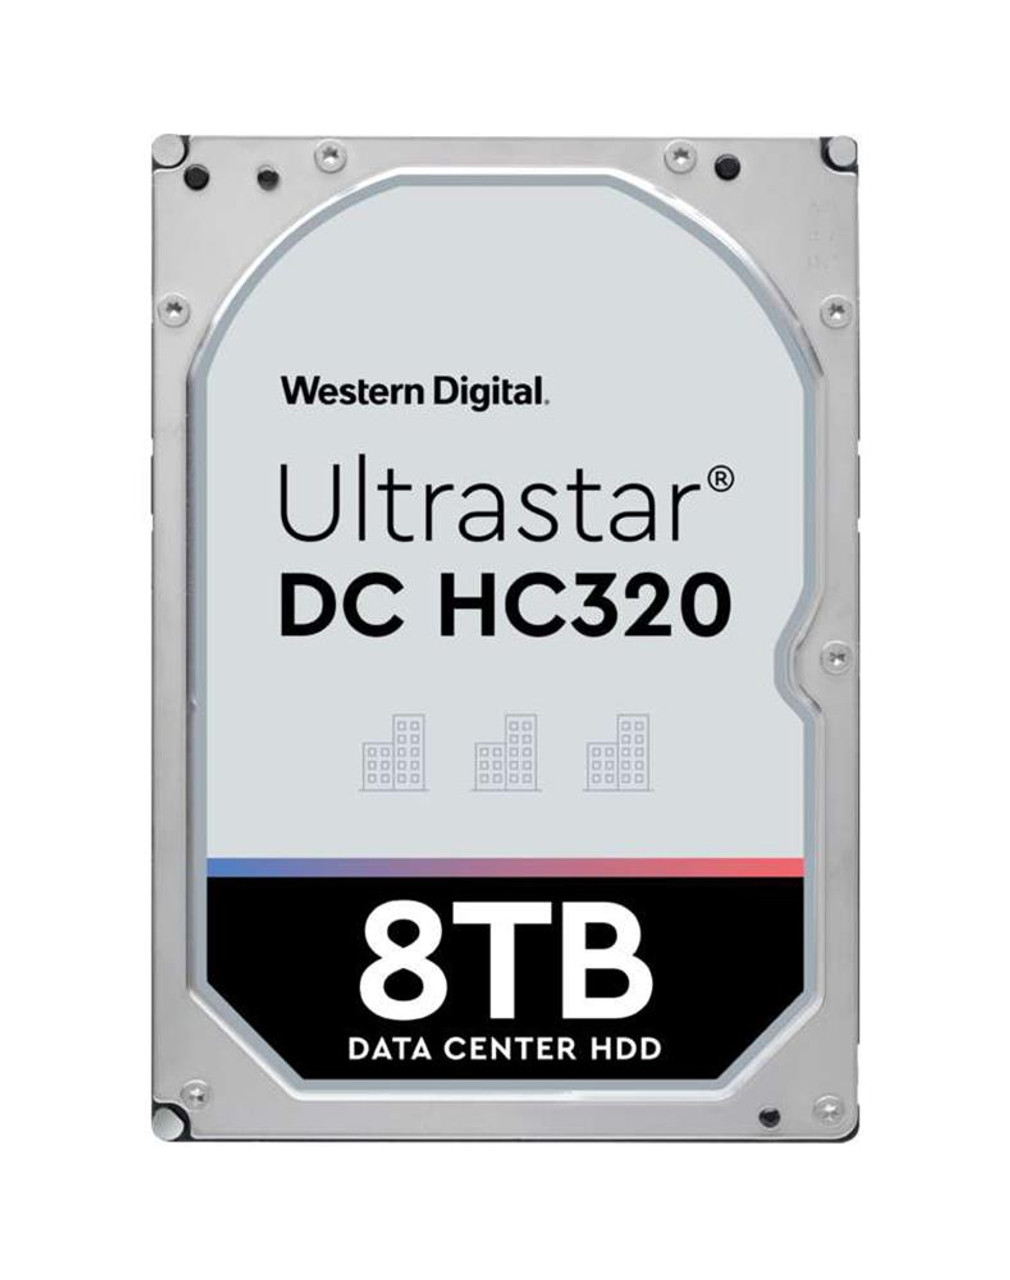 HUS728T8TAL4201 Western Digital Ultrastar DC HC320 8TB 7200RPM SAS 12Gbps 256MB Cache (TCG / 4Kn) 3.5-inch Internal Hard Drive